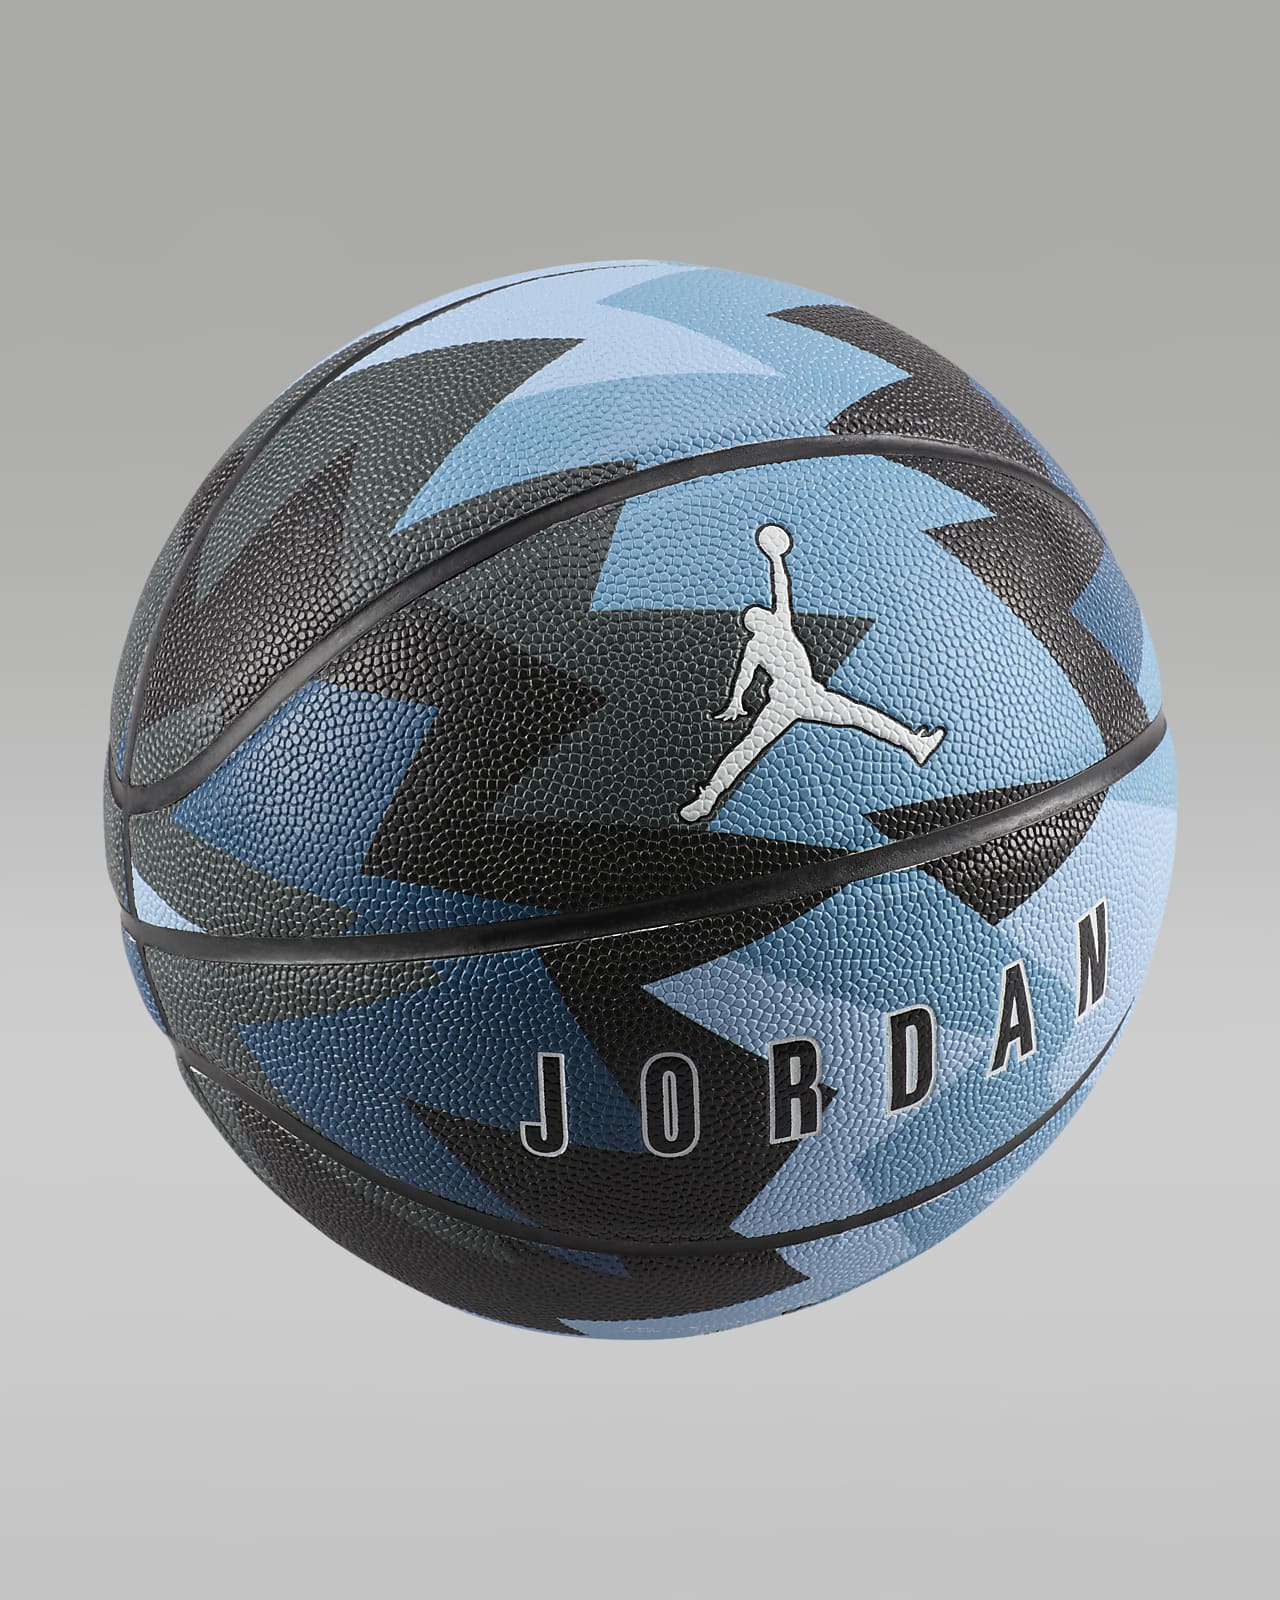 Jordan 8P Basketball (nicht aufgeblasen)